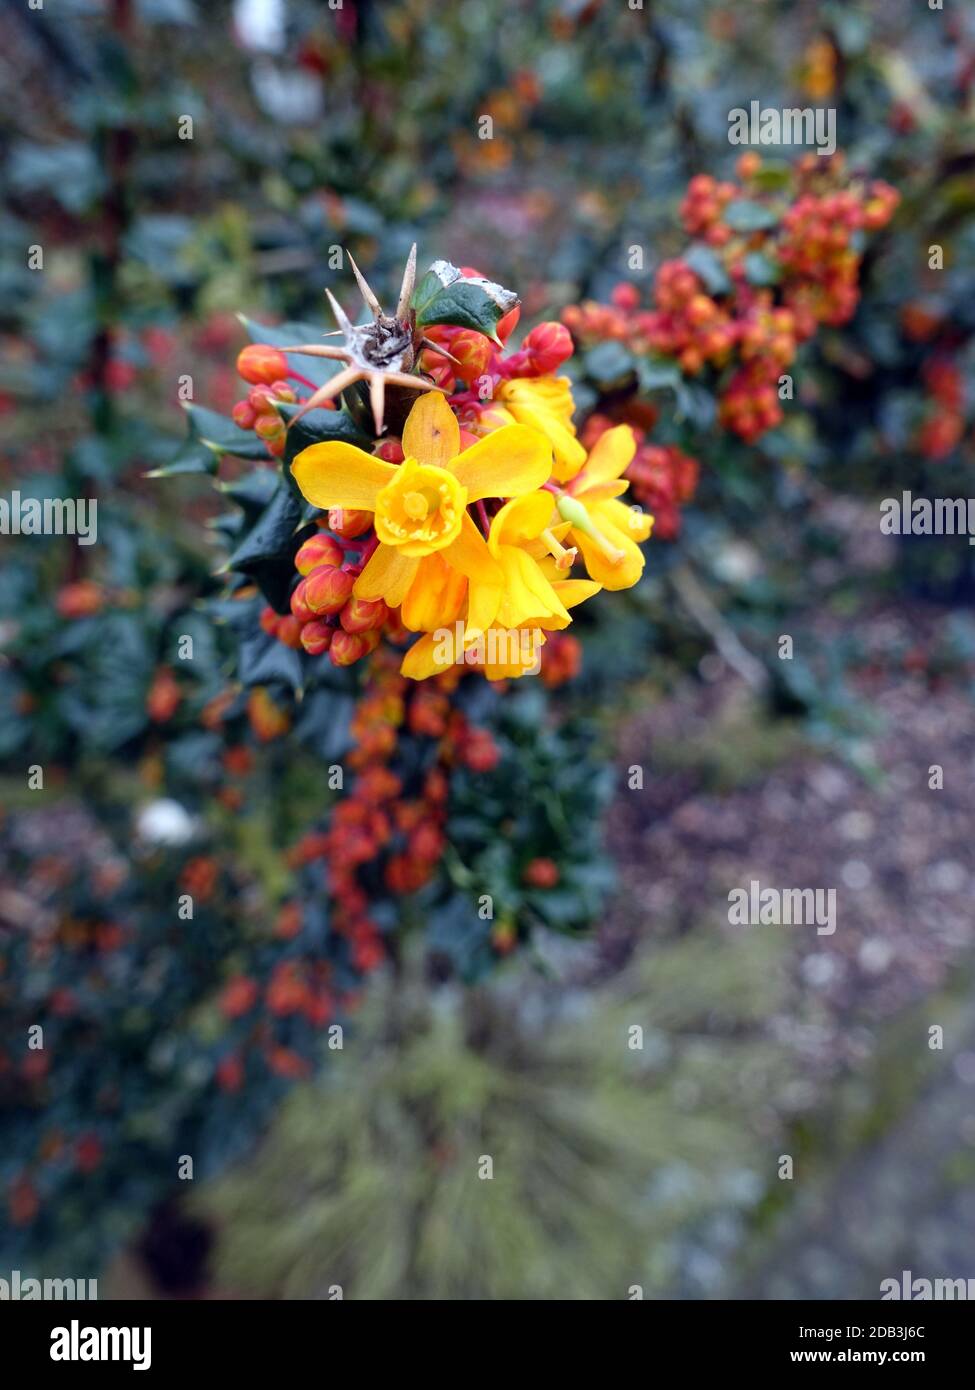 gelbe Blüten von Darwins Berberitze (Berberis darwinii), Weilerswist, Nordrhein-Westfalen, Deutschland Stock Photo